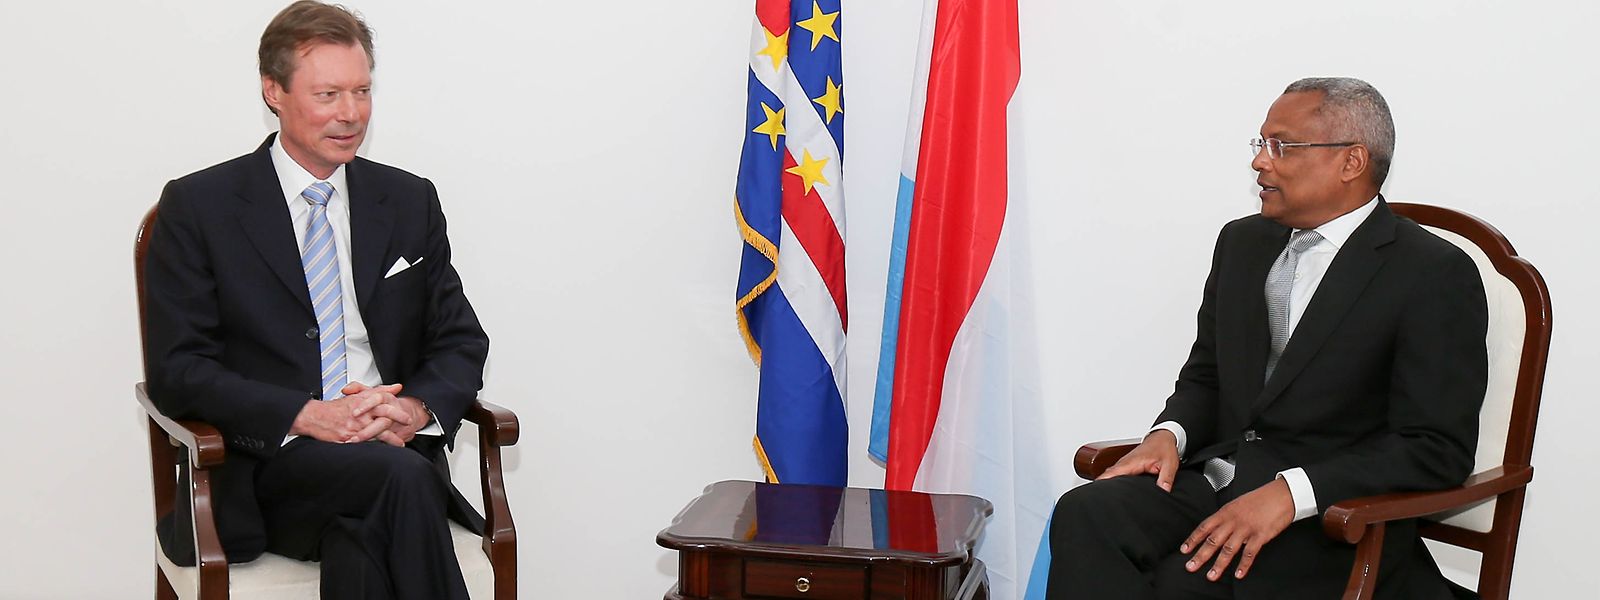 José Maria Neves recebeu o Grão-Duque Henri em 2015, quando era primeiro-ministro de Cabo Verde. Agora vem ao Luxemburgo enquanto Presidente da República.